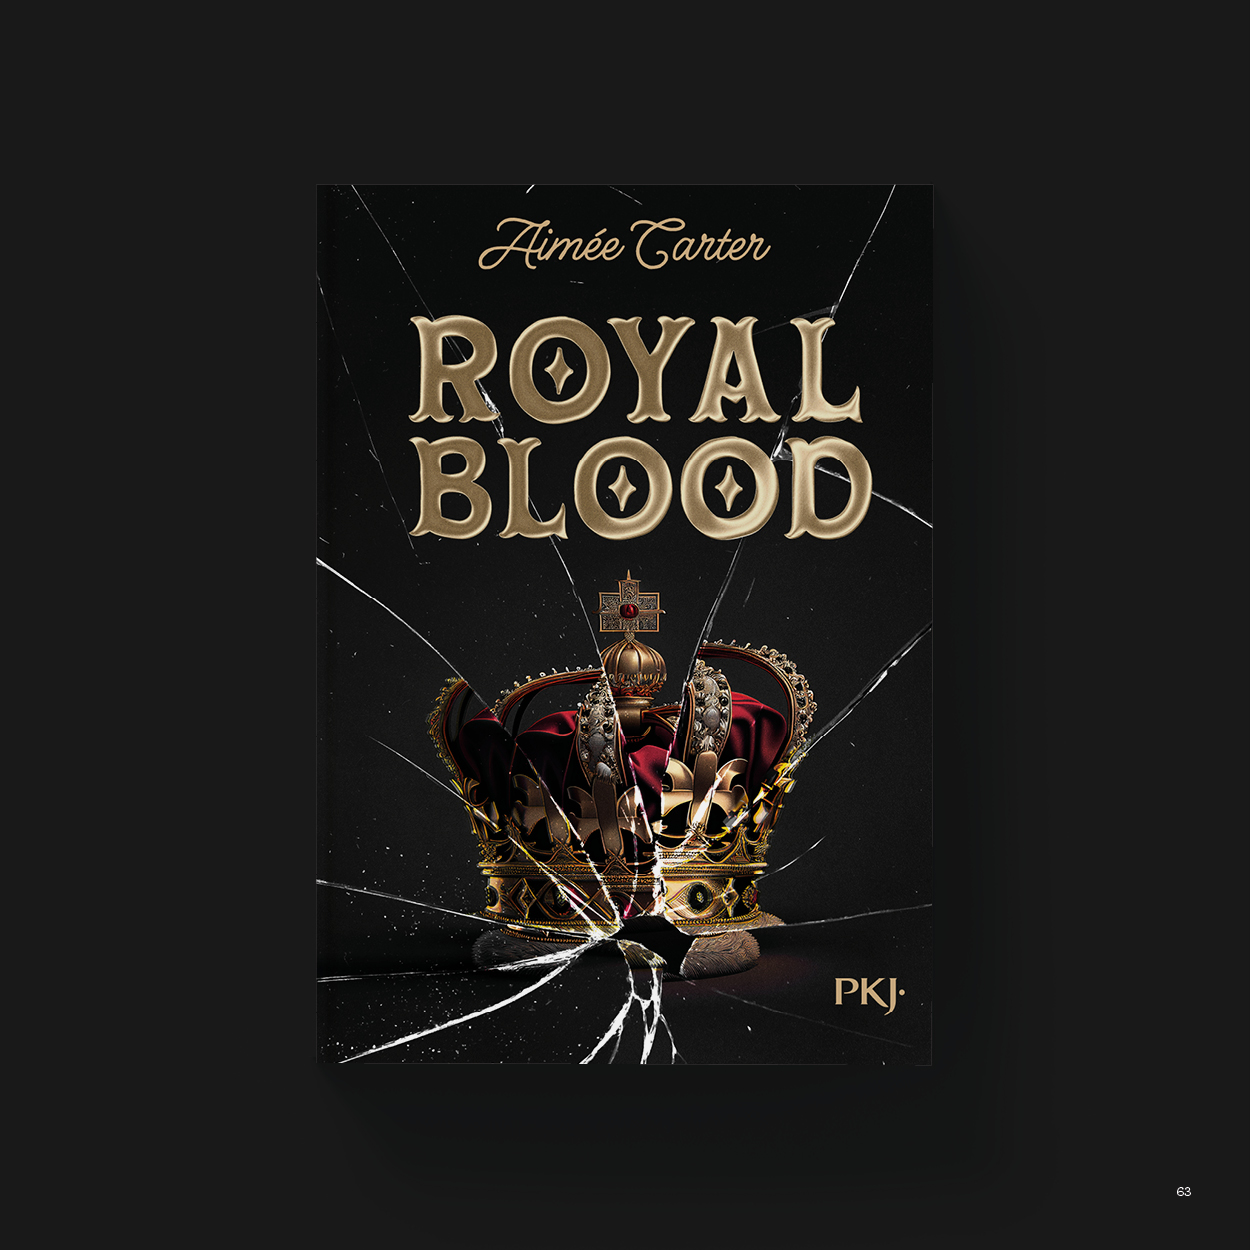 Vue_Royal_blood_63